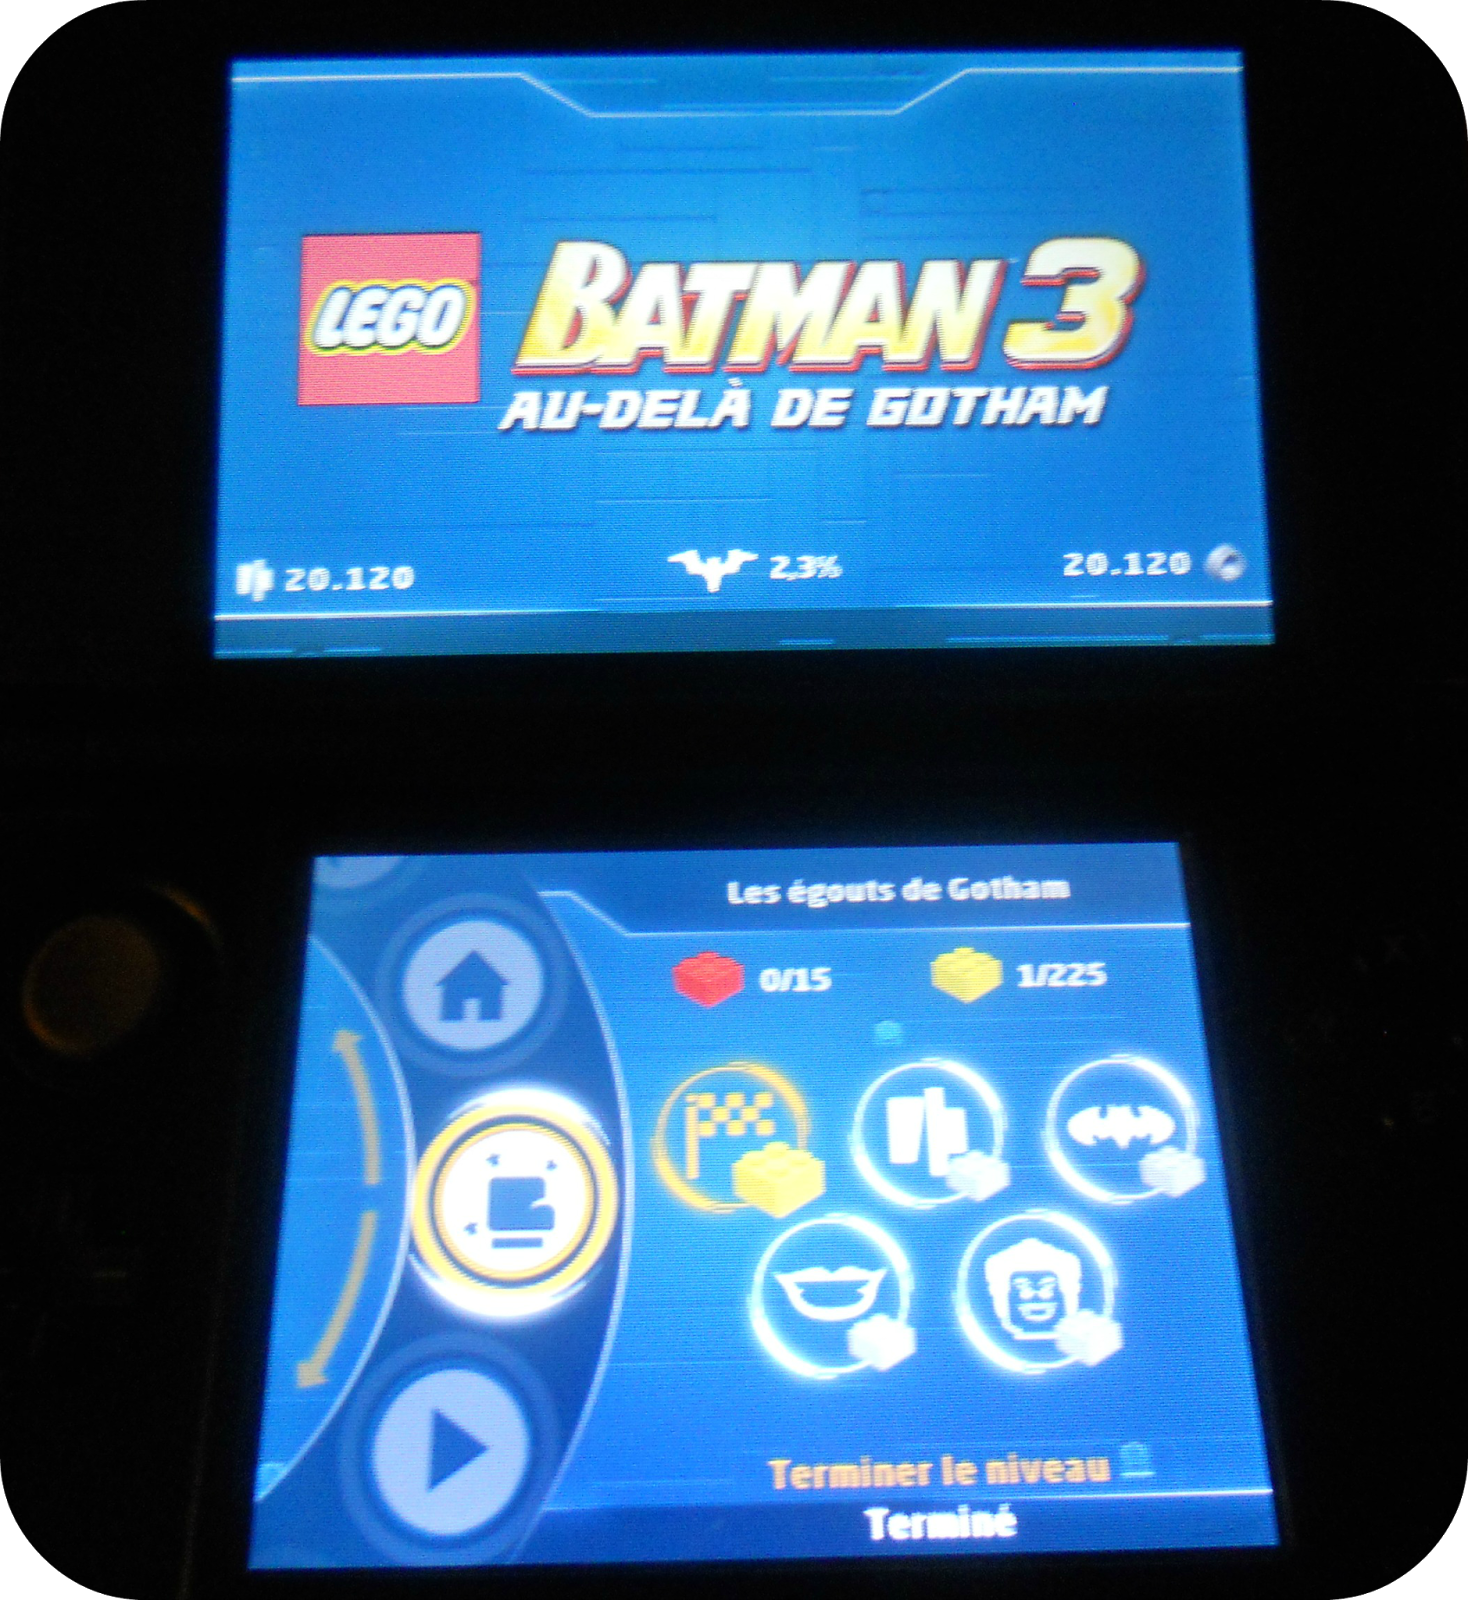 LEGO® BATMAN™ 3: Au-delà de Gotham